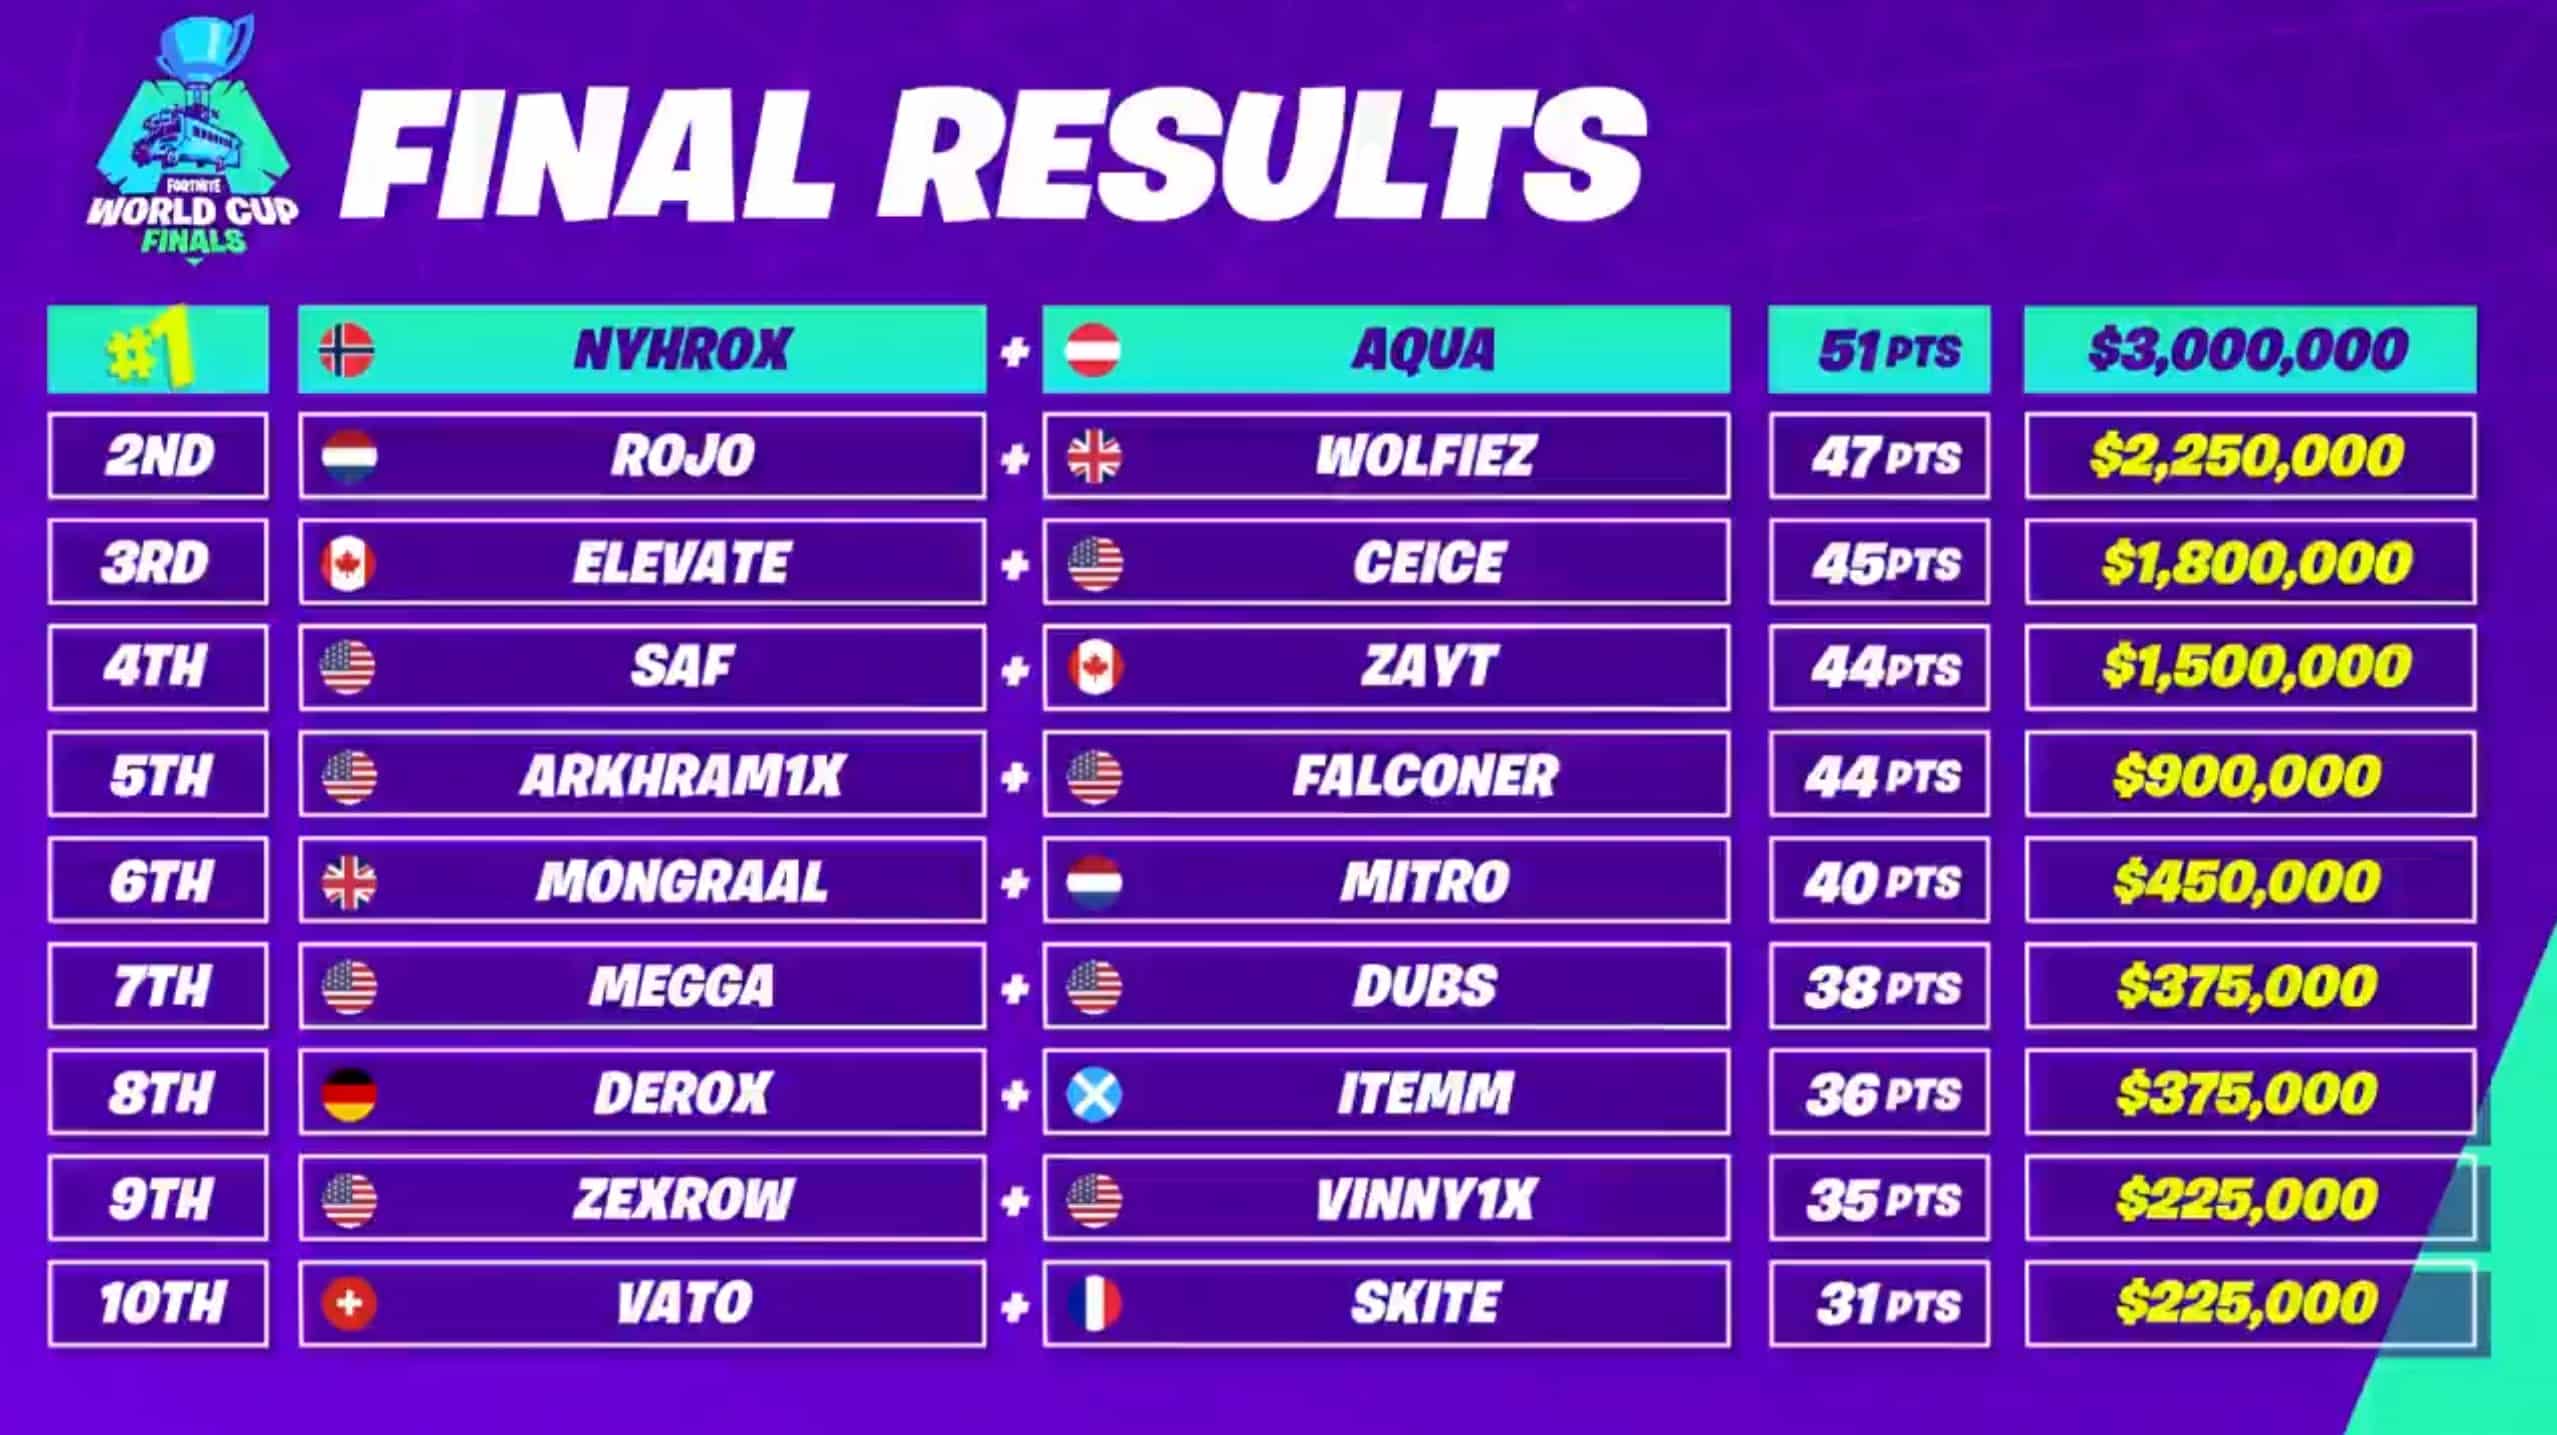 WM 2019 Duo Final Standings